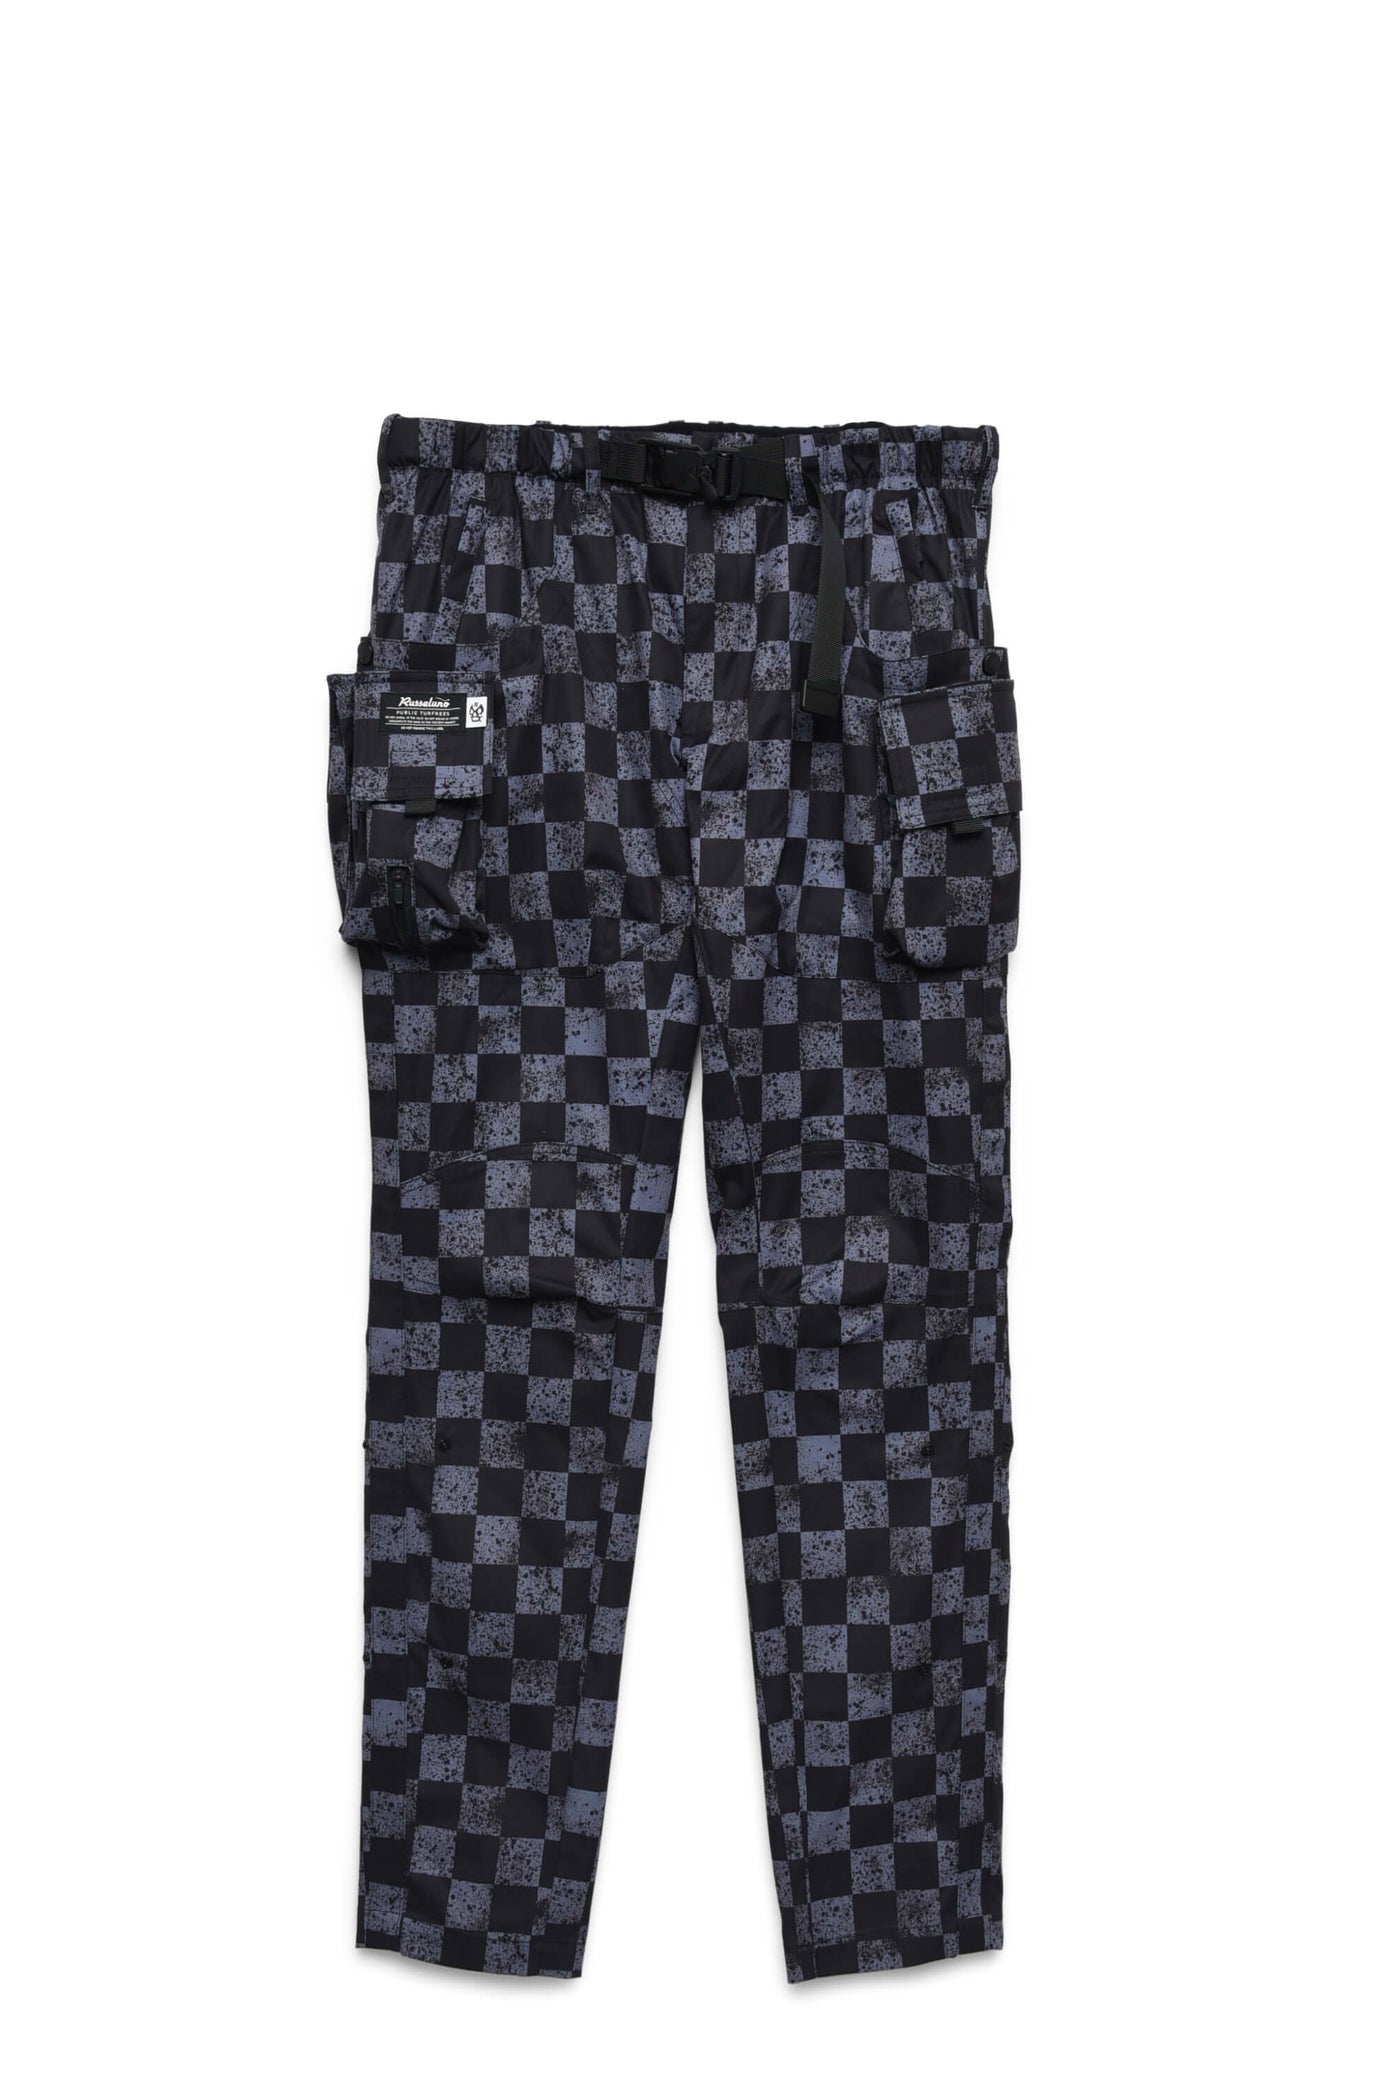 Pantalones flacos personalizados (patrón)